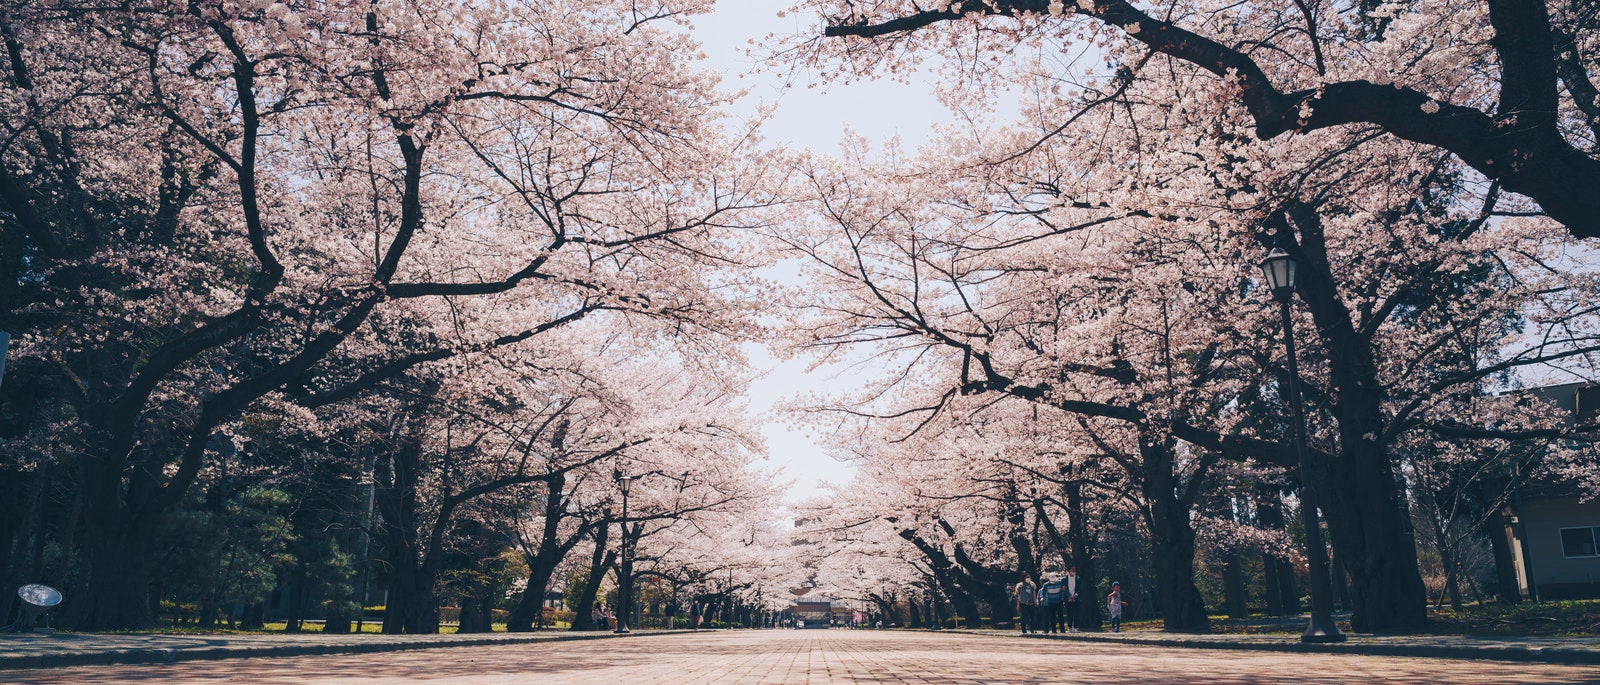 「日本大学工学部の桜並木」の写真